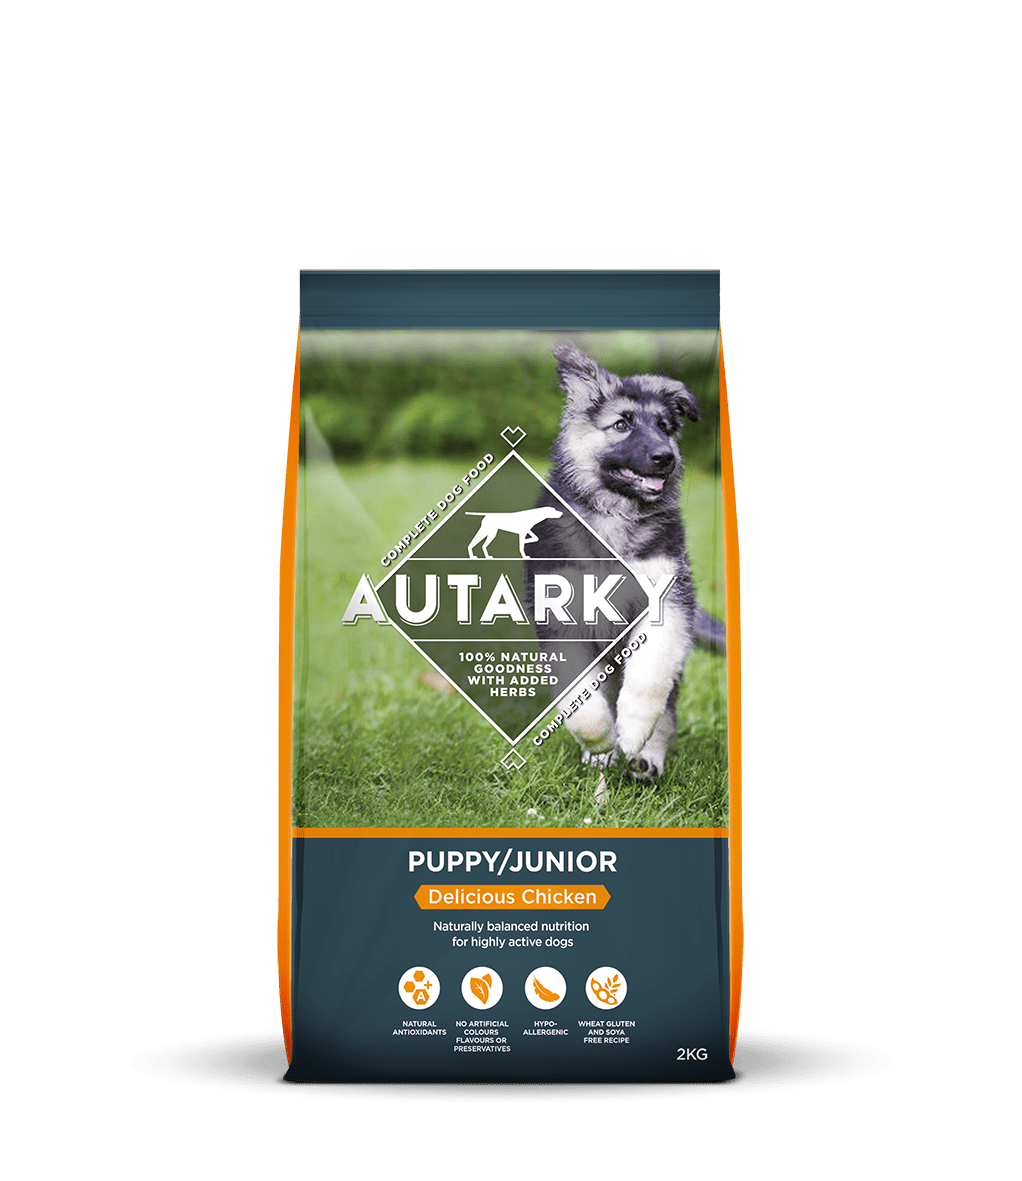 Autarky Puppy Junior Chicken, Autarky, 12 kg